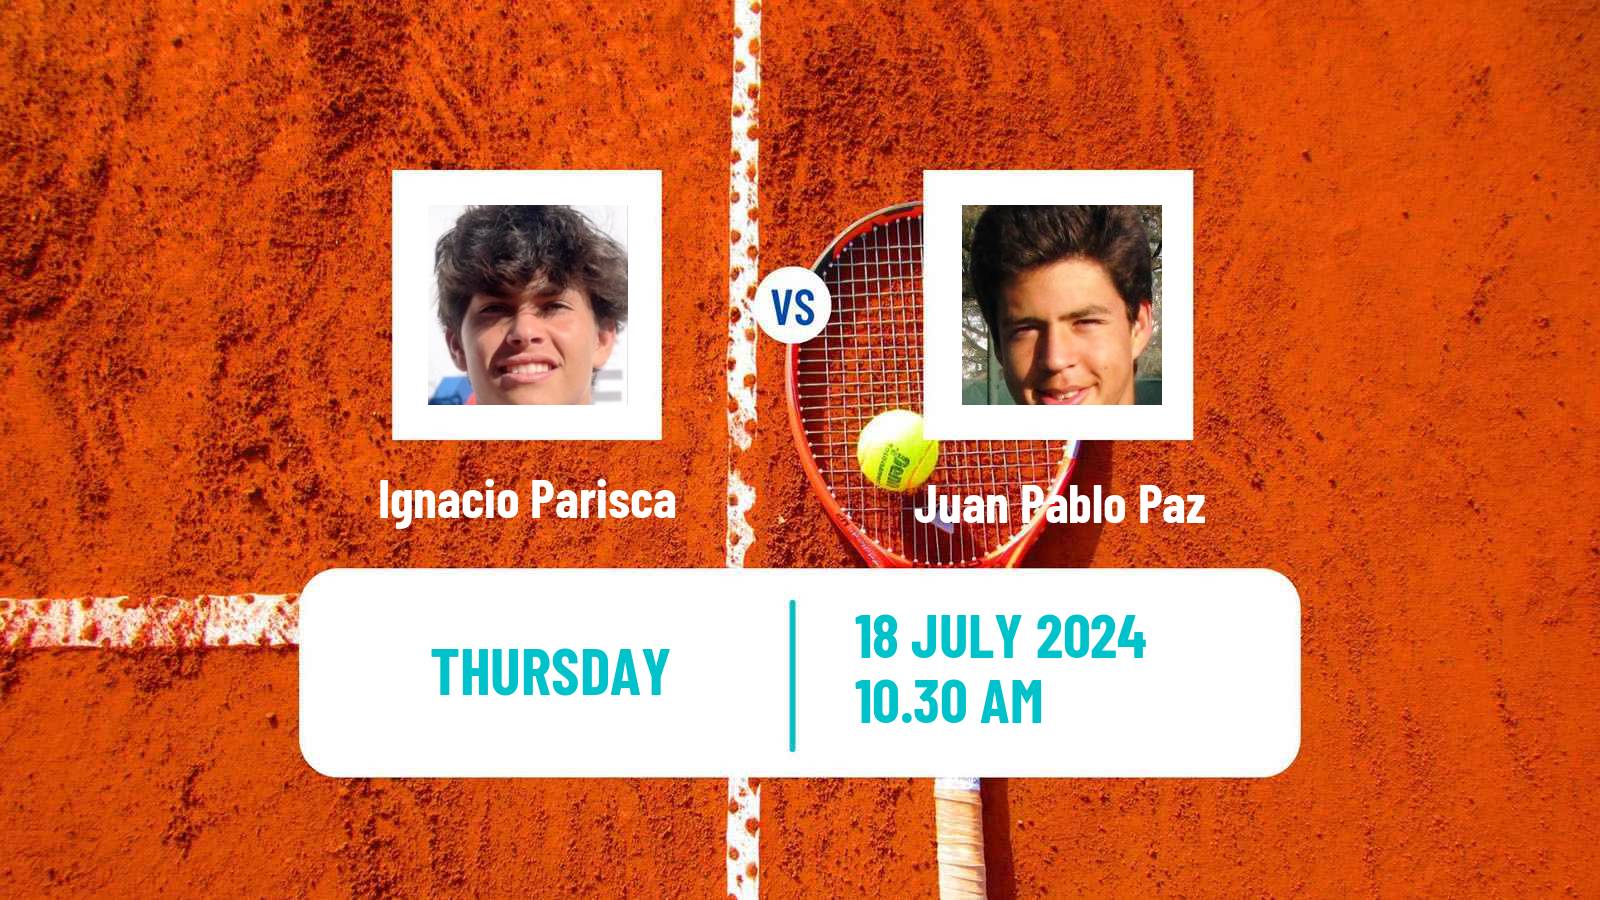 Tennis ITF M15 Kursumlijska Banja 11 Men Ignacio Parisca - Juan Pablo Paz